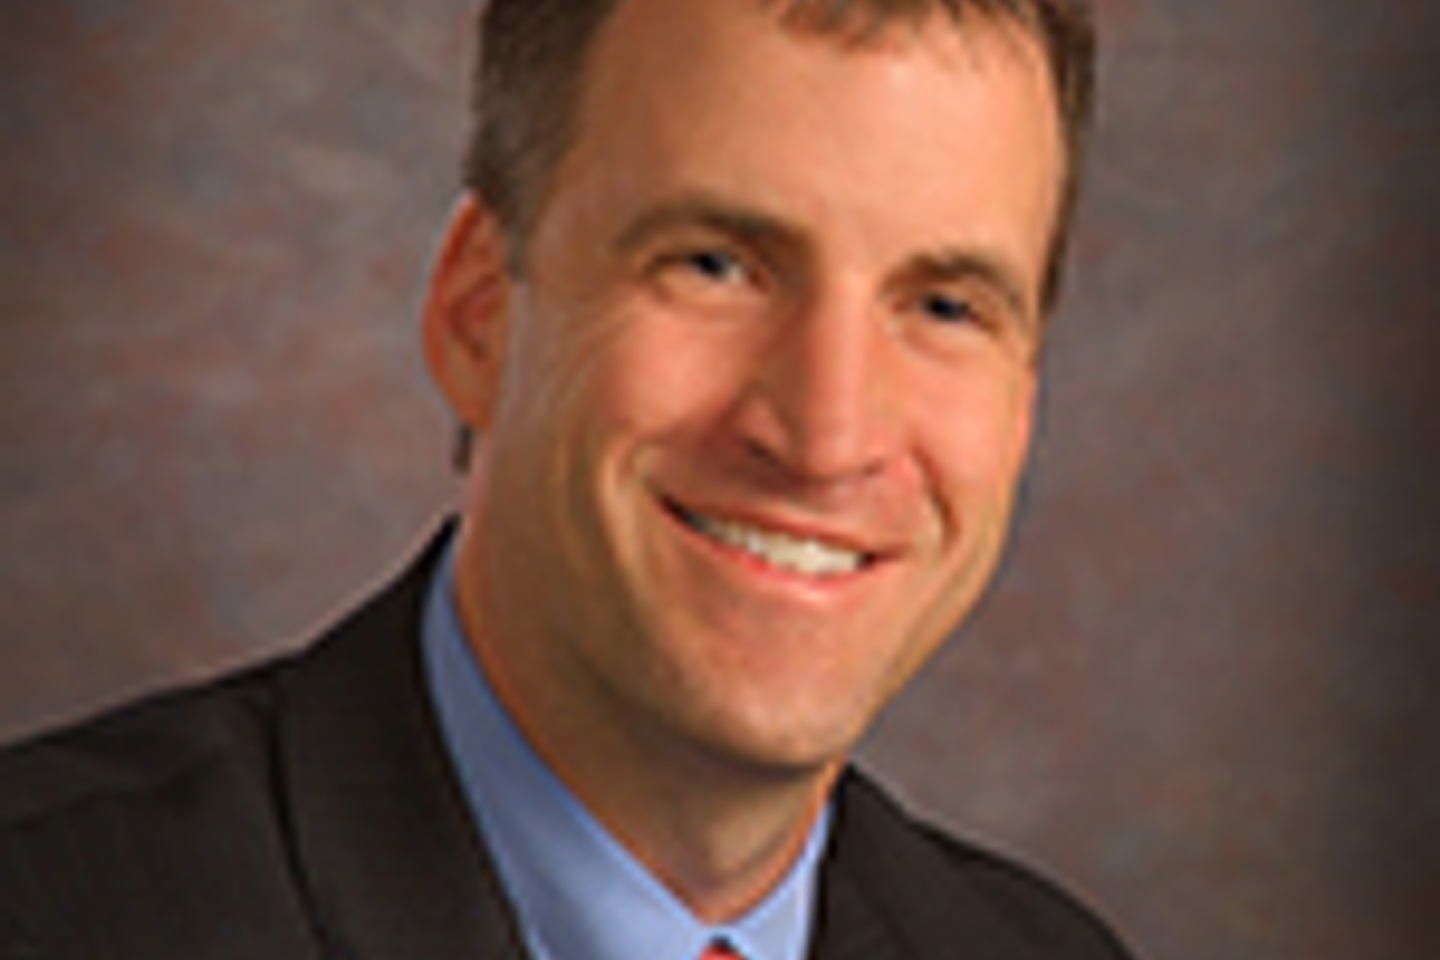 John Deardorff, CEO at Reston Hospital Center